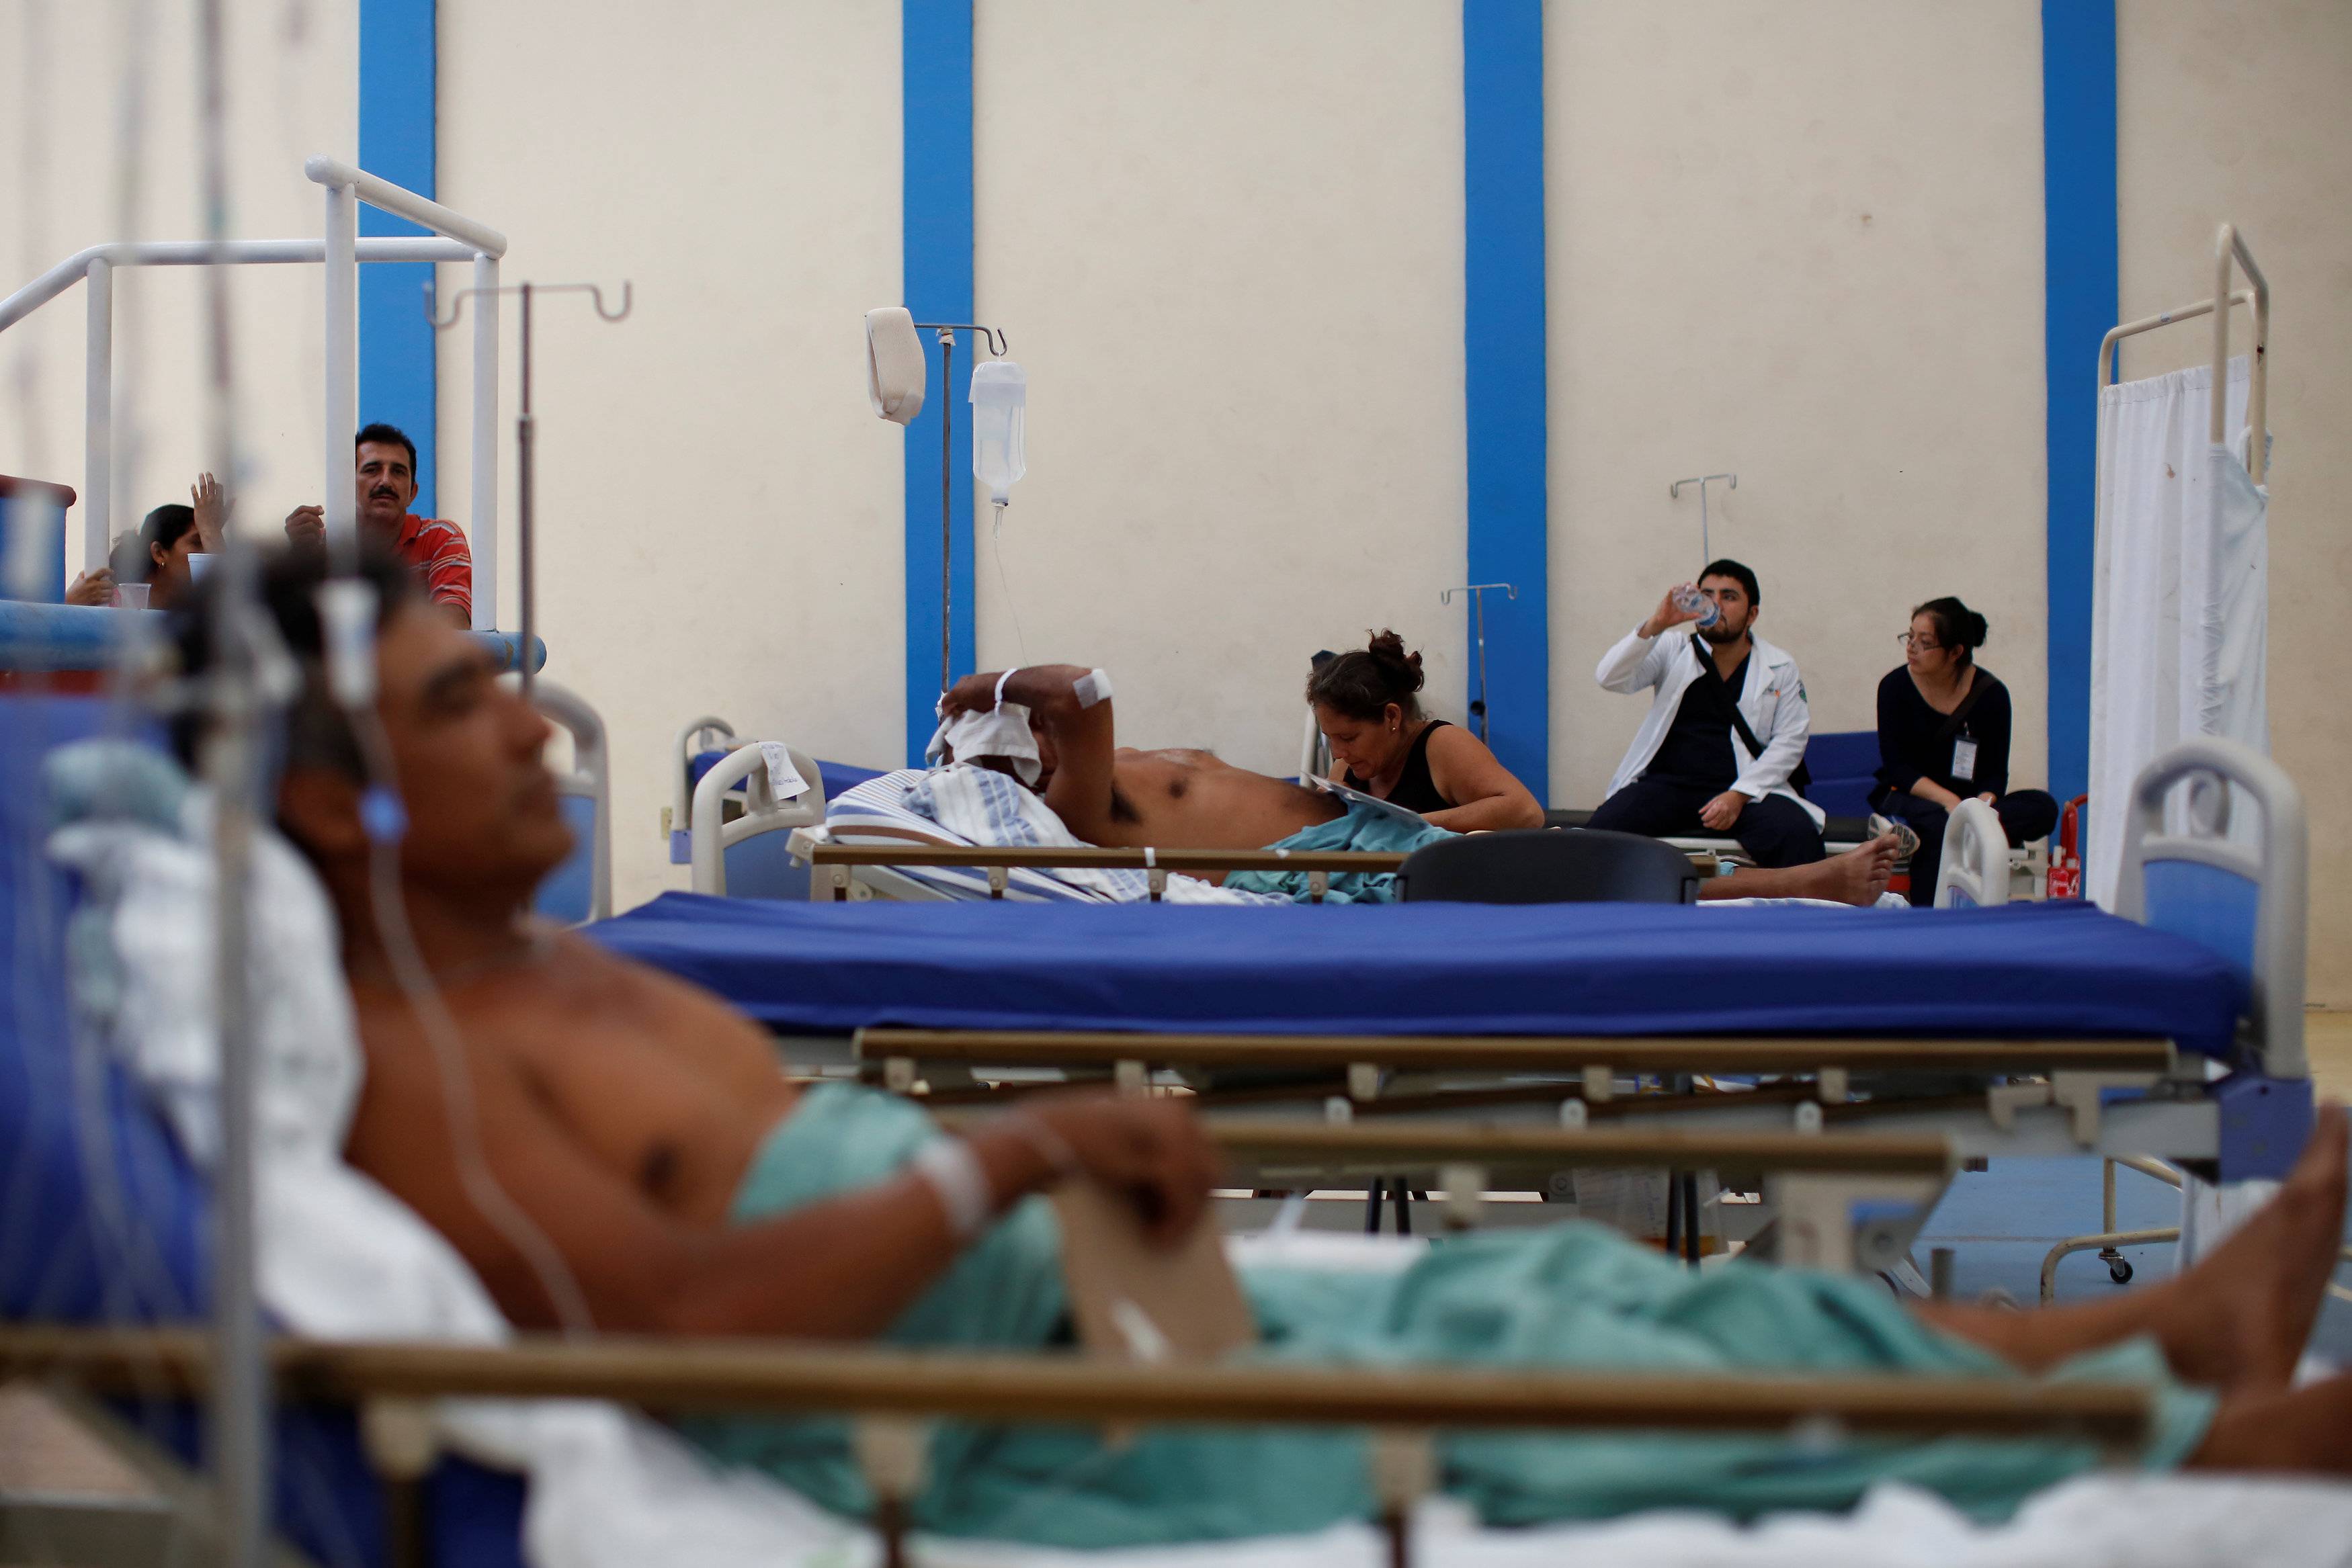 Feridos pelo terremoto são atendidos em quadra de basquete improvisada como hospital de emergência